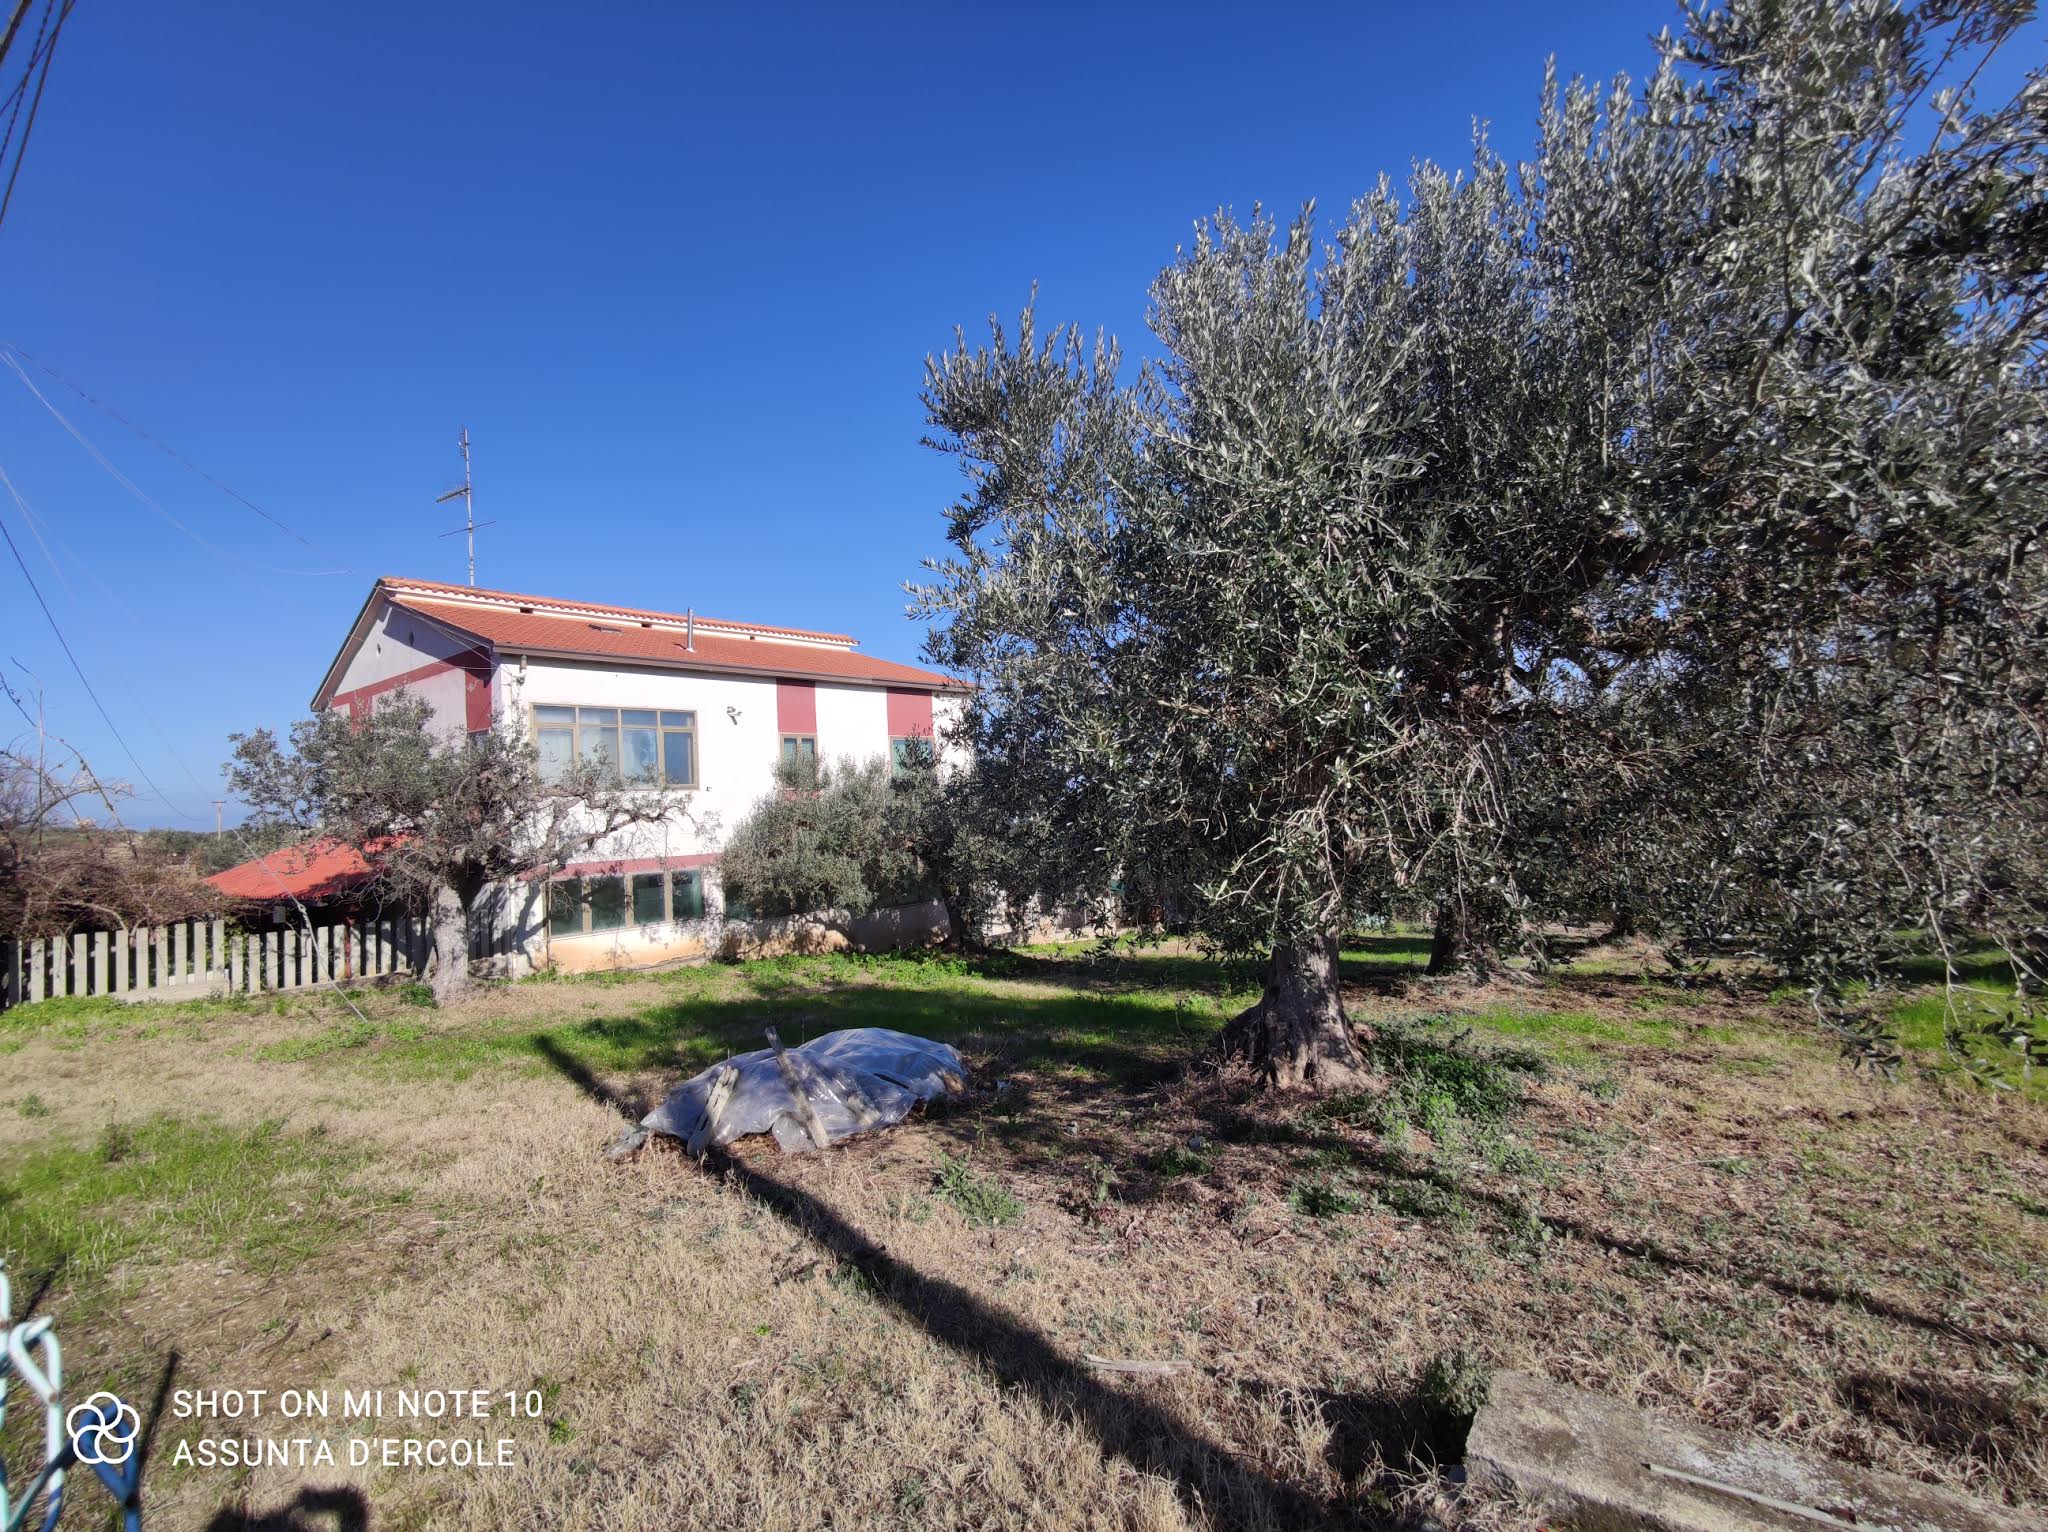 Rif 1448 Villalfonsina (CH) – Azienda agricola – Byggnader och mark – € 400000